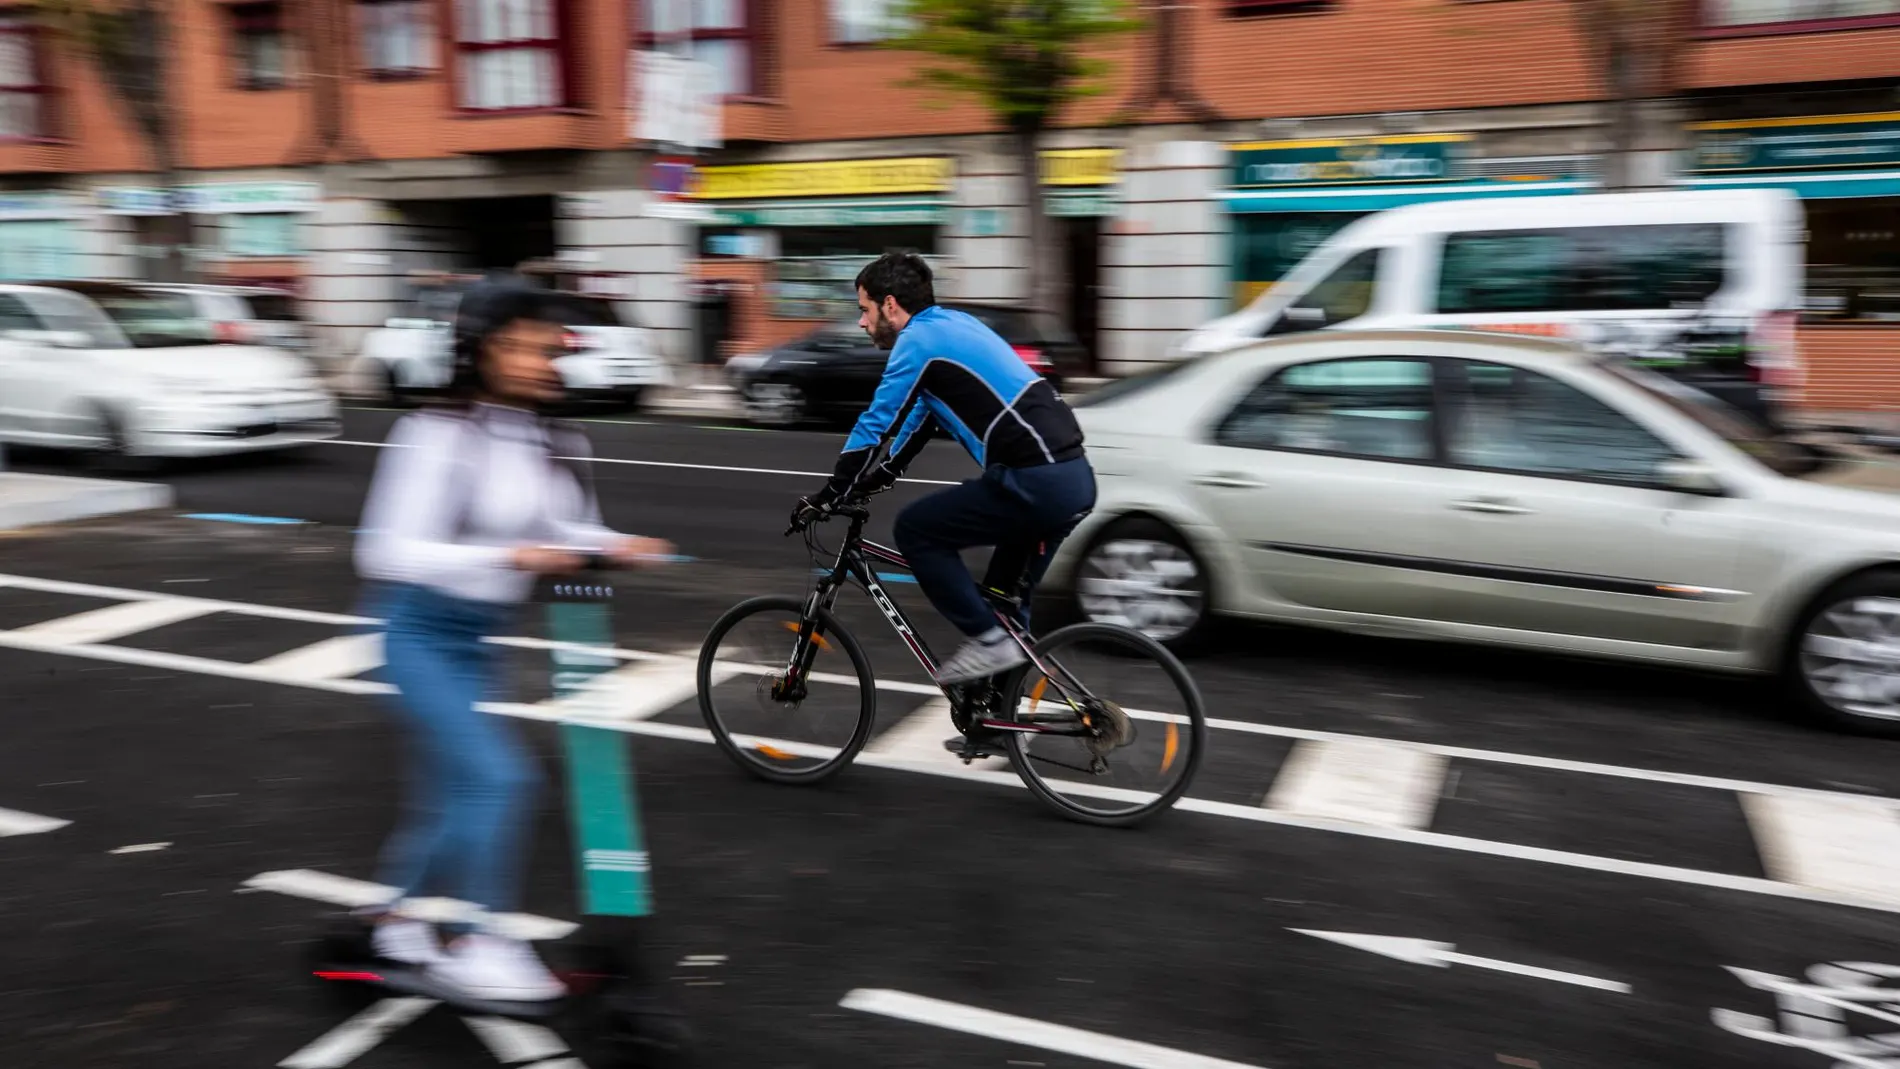 Patinetes y bicicletas conviven en las calles de la capital